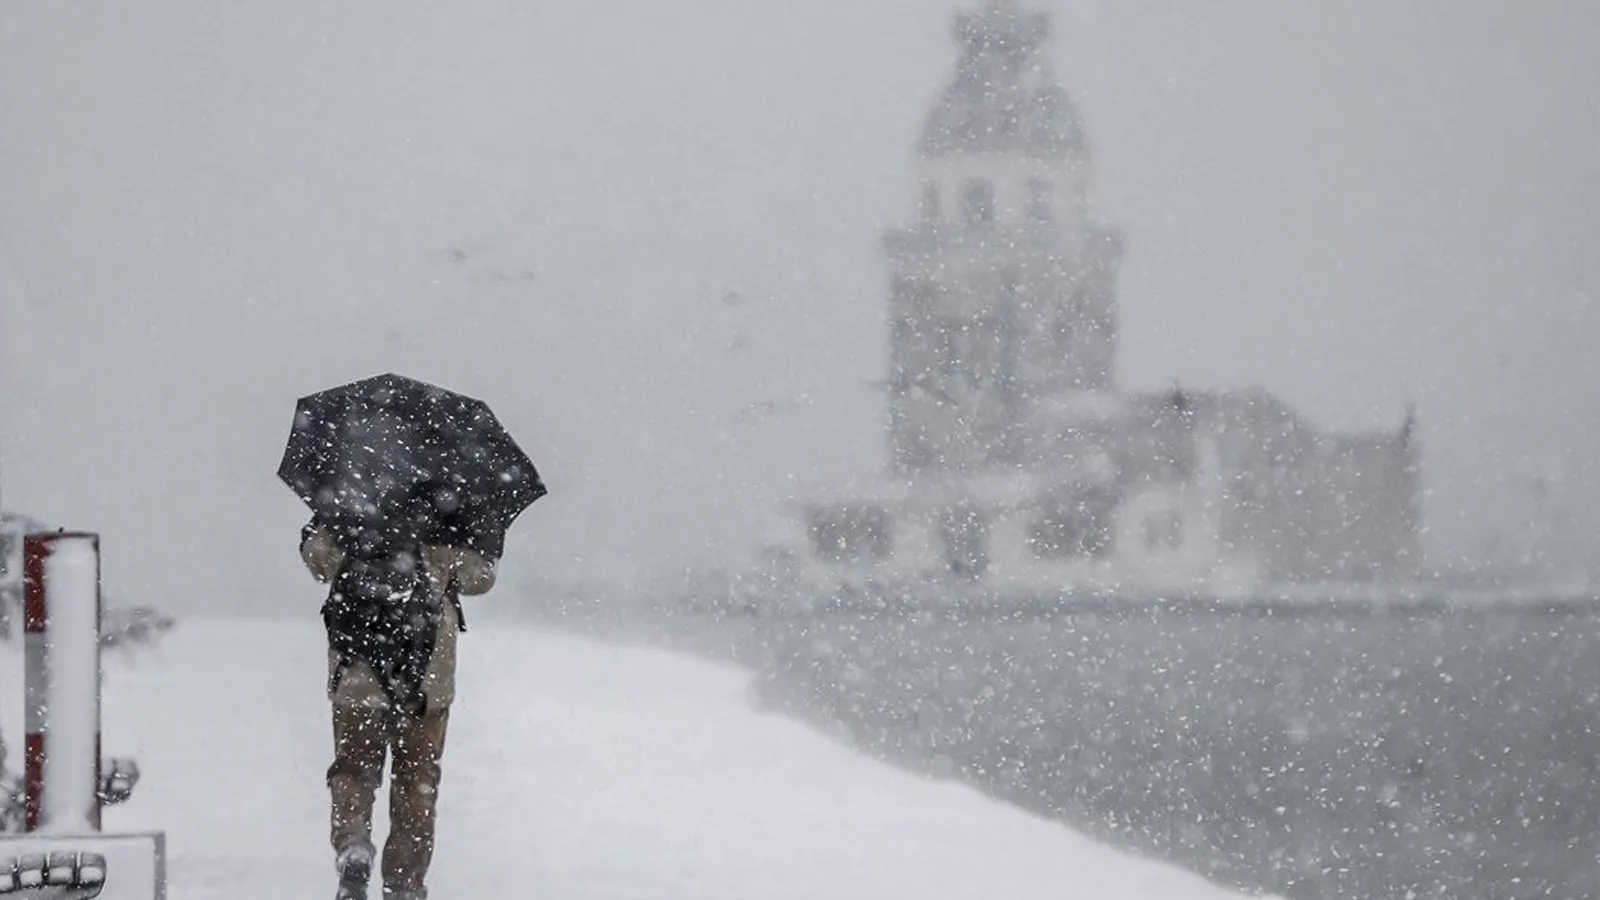 meteoroloji den sari uyari istanbul a kar ne zaman yagacak turkiye geneli hava durumu raporu galeri trend yasam